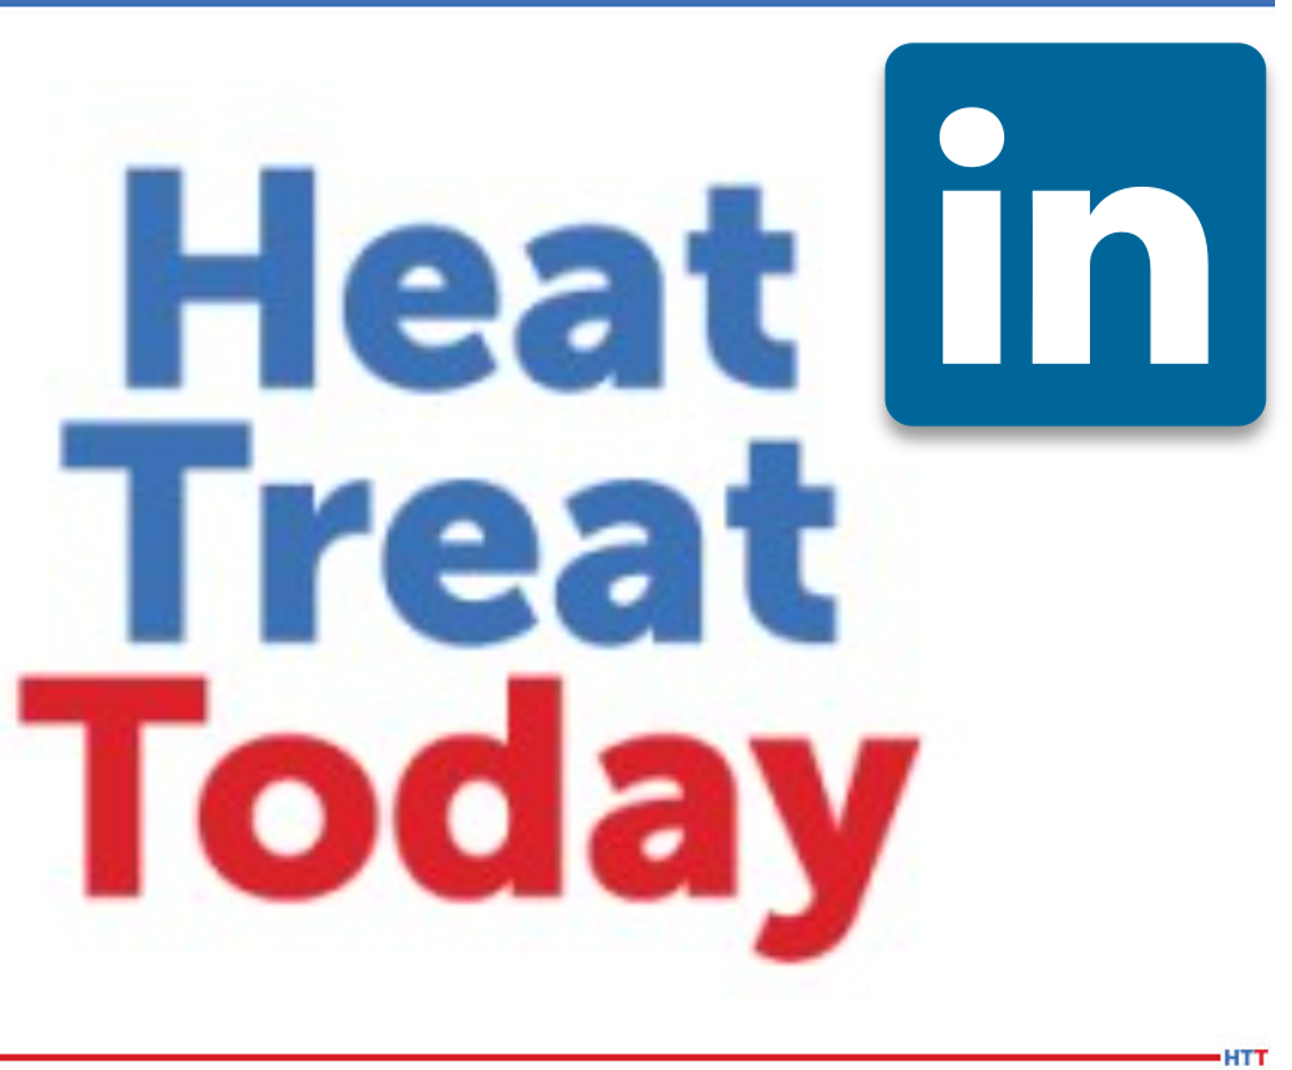 HTT logo with LinkedIn logo